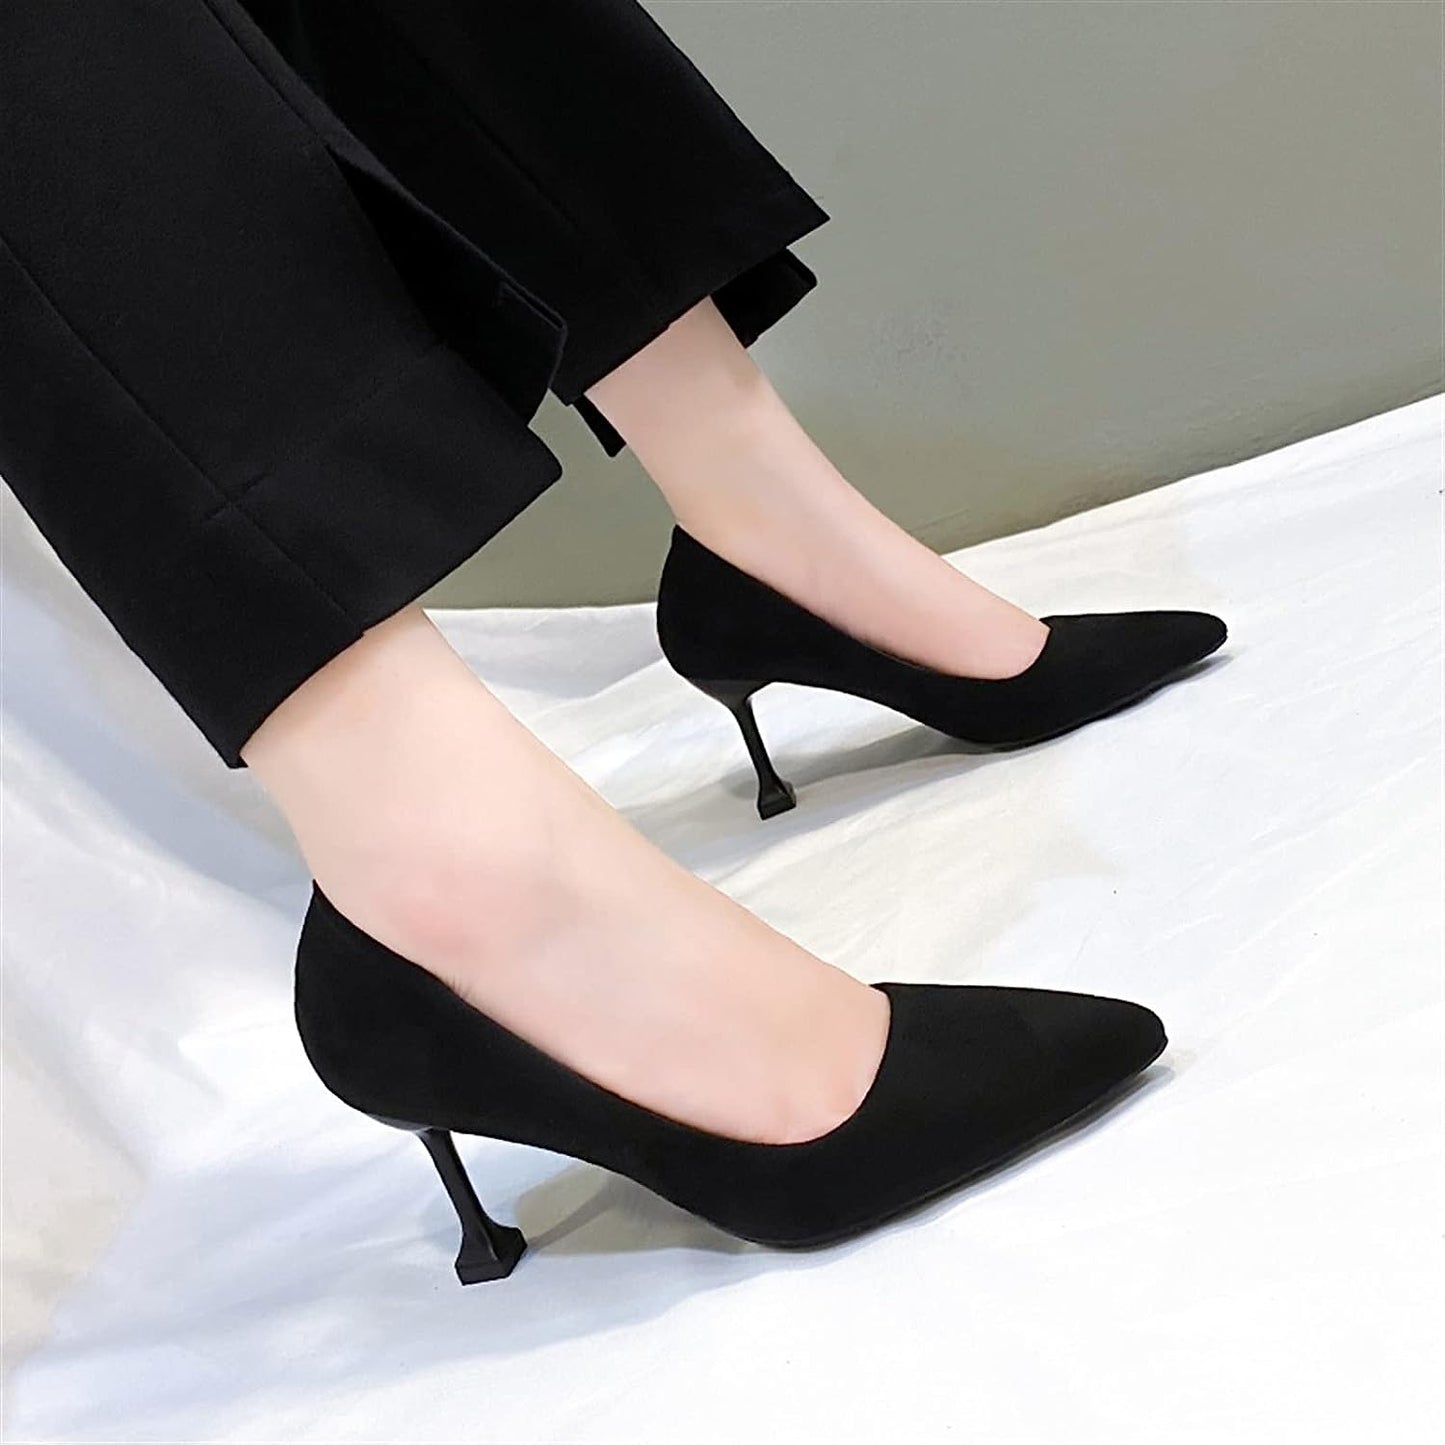 Heels for Women, Color Sole Square Heel Black Suede Women's Wedding Dress Shoes Thin Heel Pointed Shallow Mouth Women's Heel Shoes (Color : Black, Size : 5.5 UK)